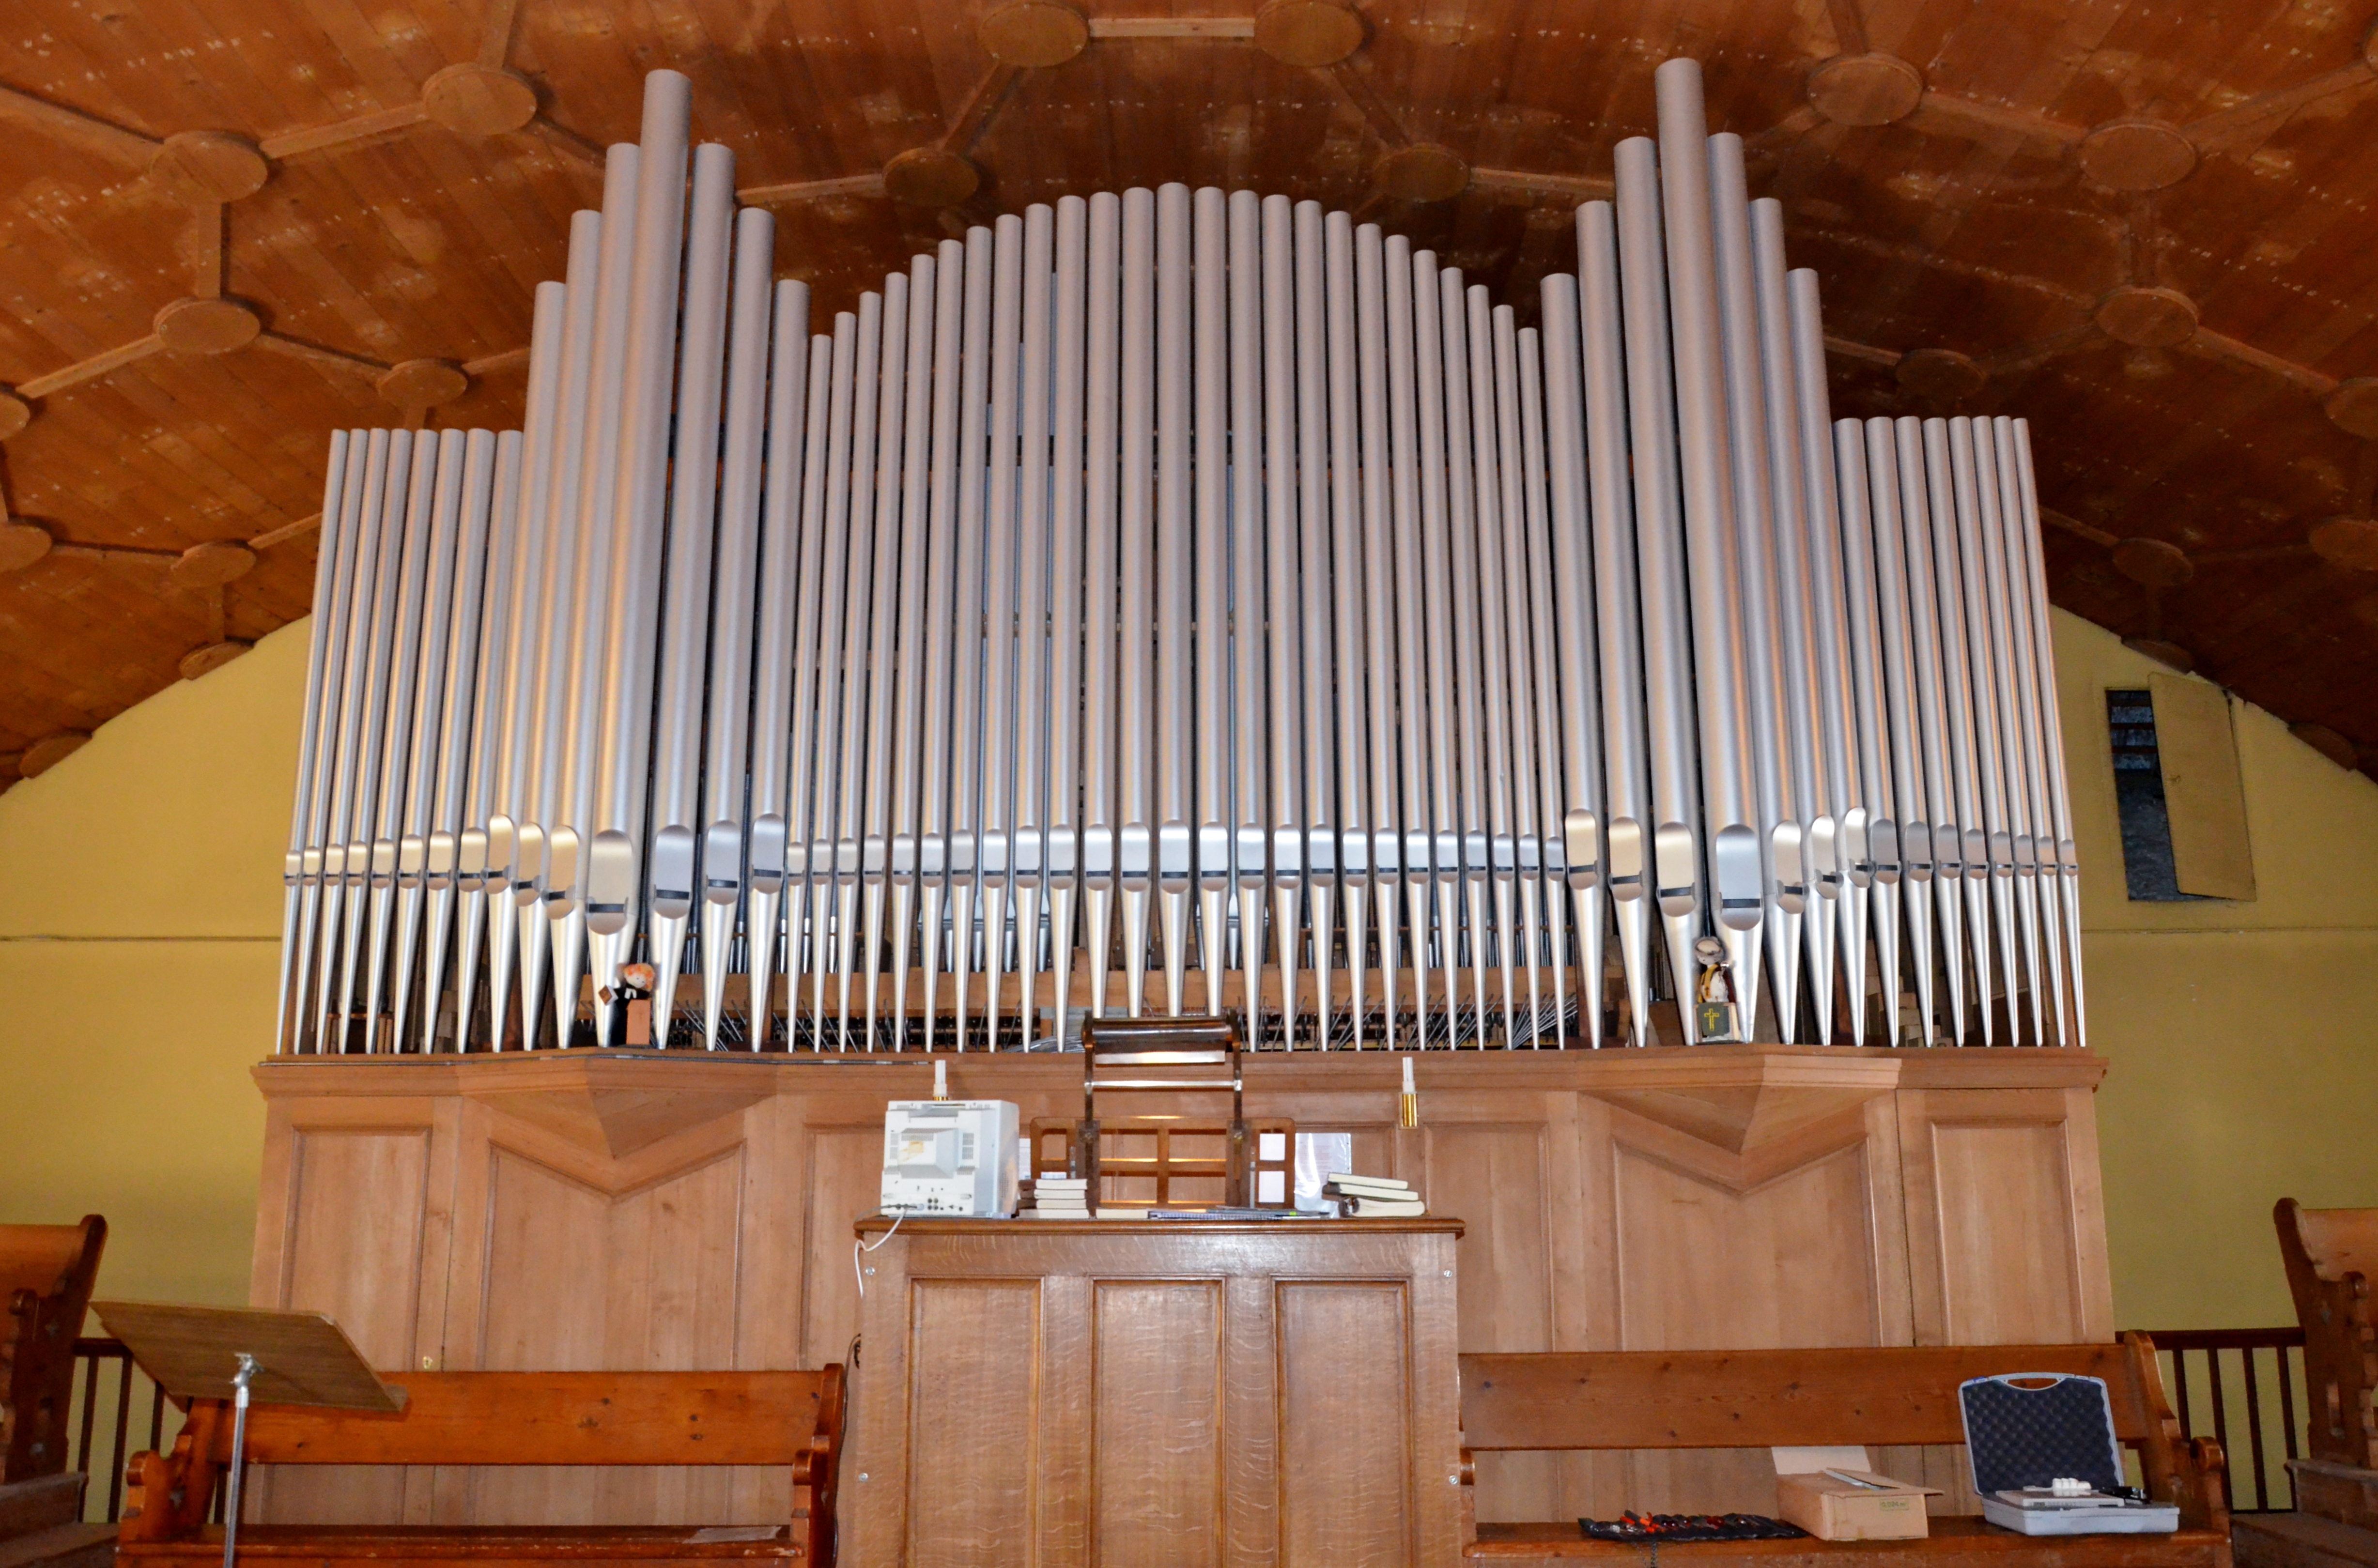 Bex Orgel mit Pfeifen direkt dem Betrachter ausgesetzt